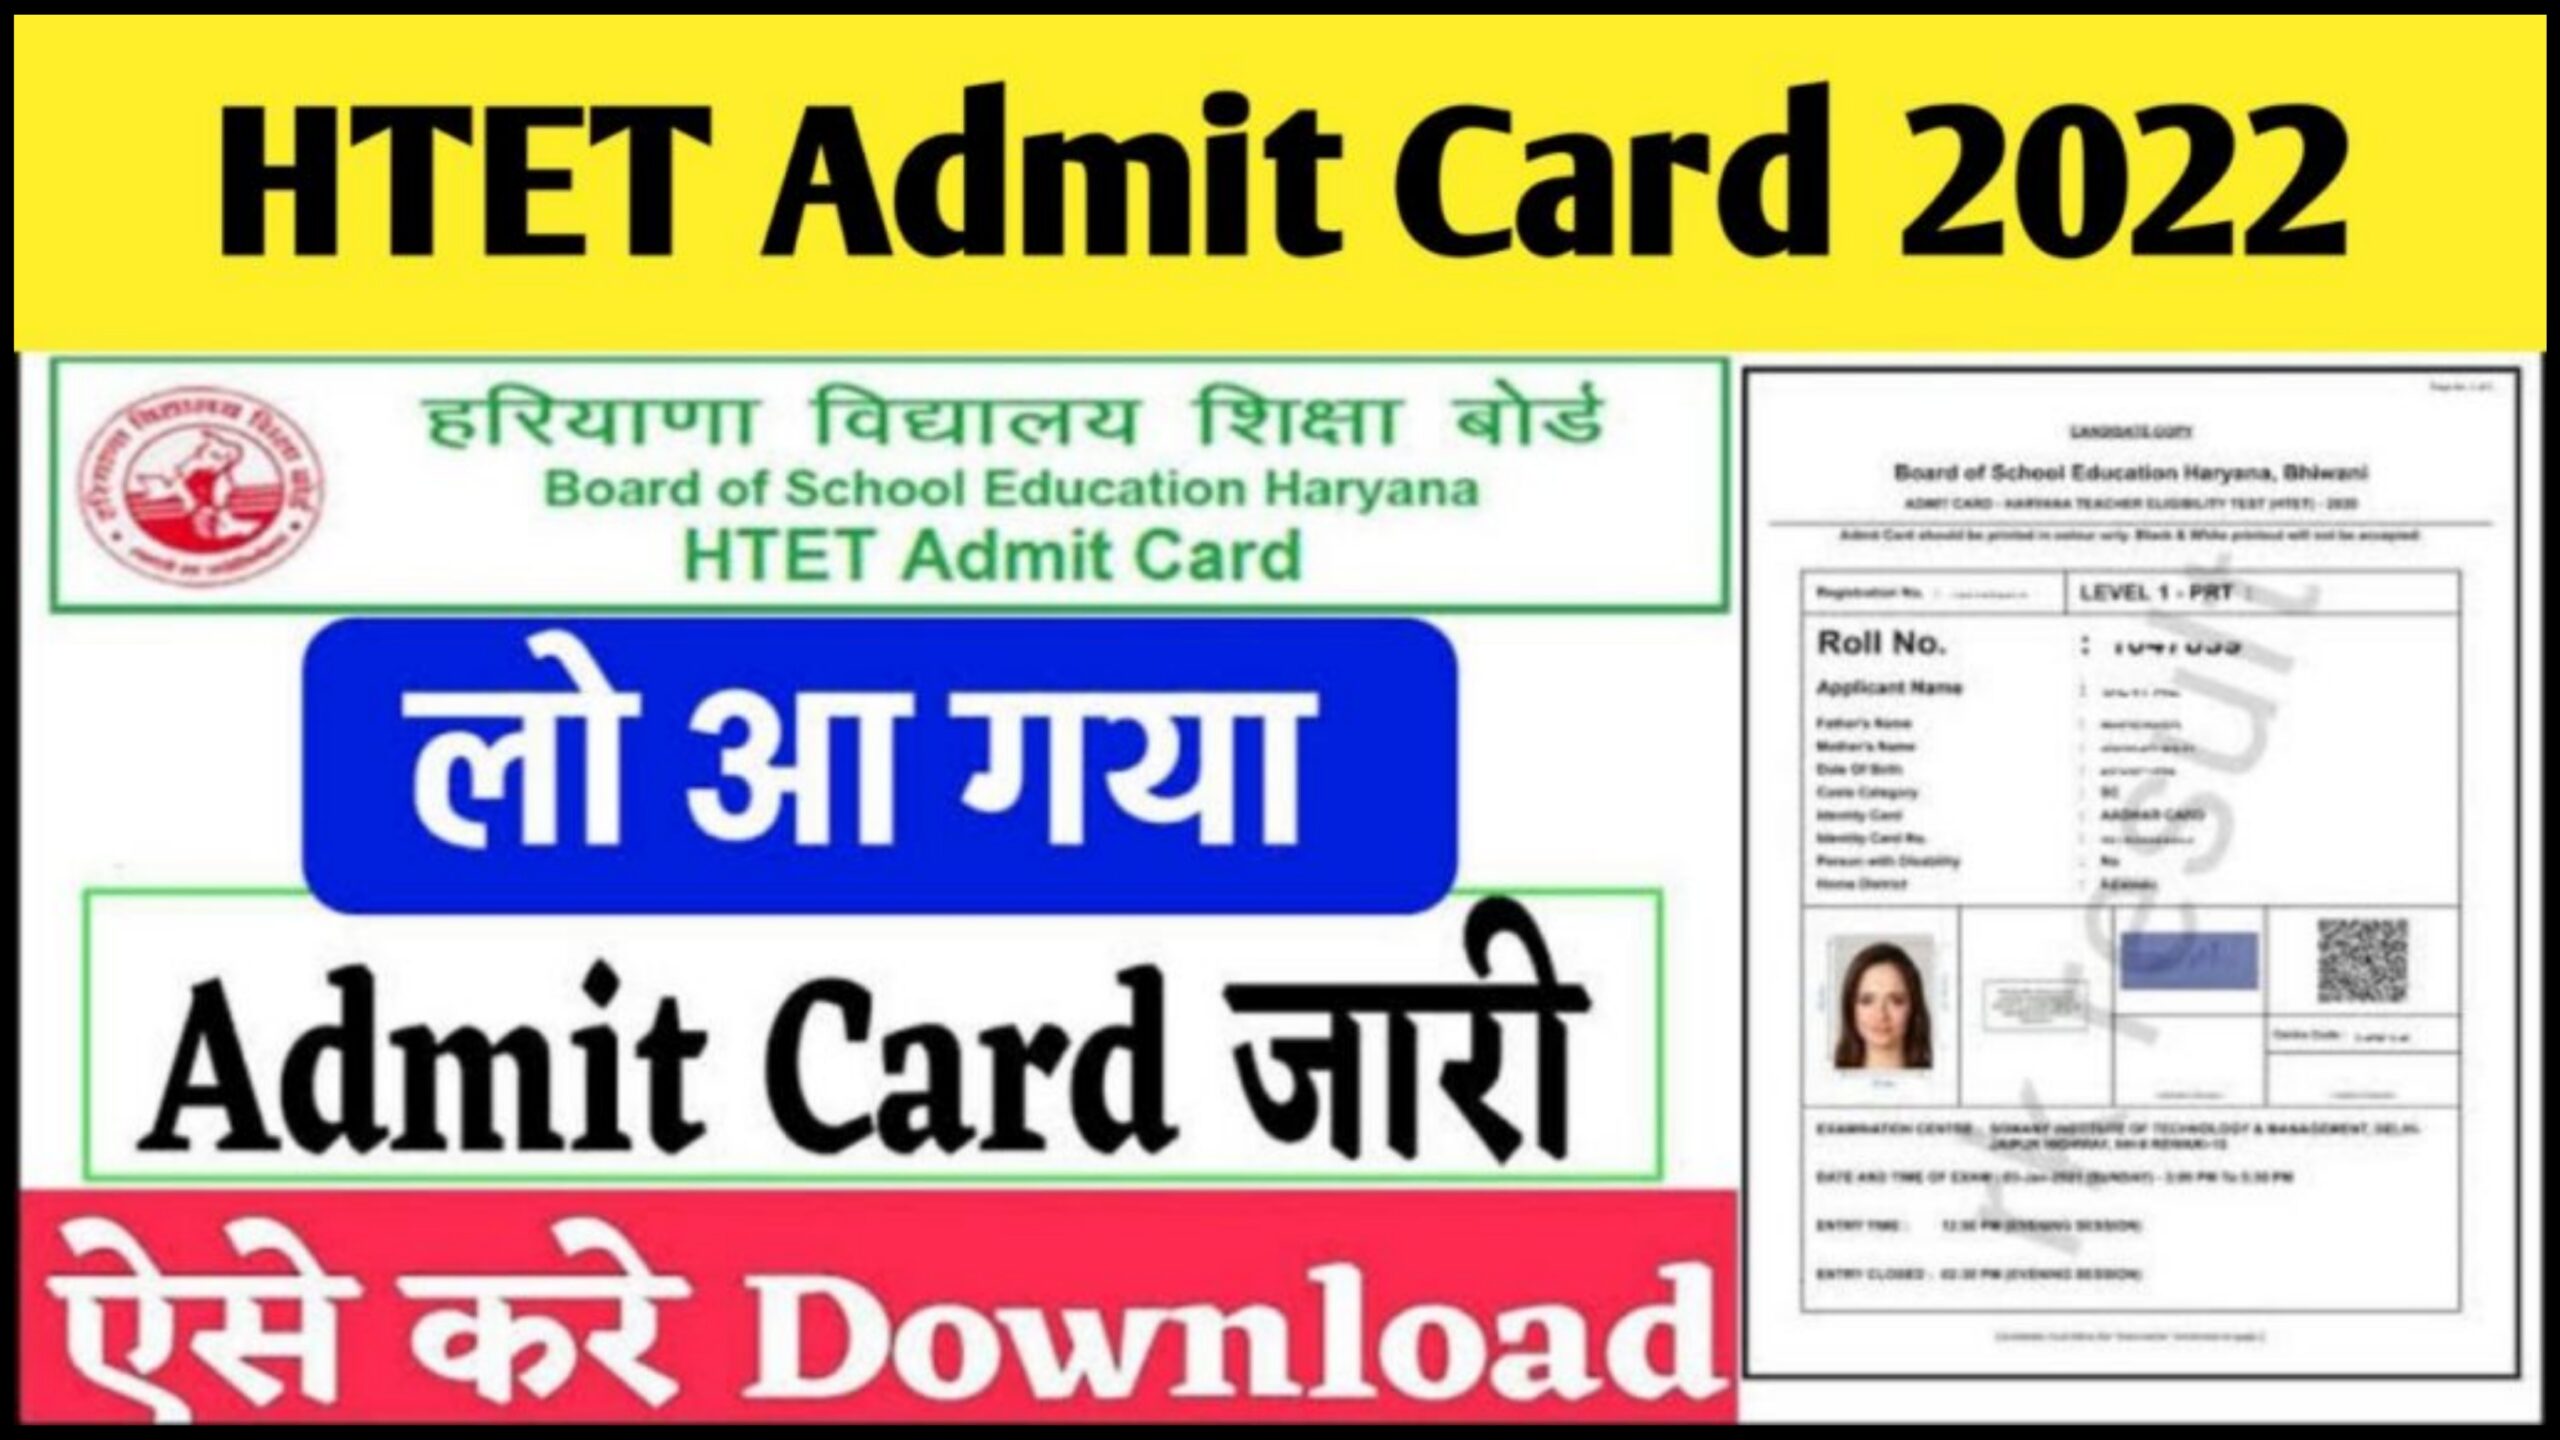 HTET Admit Card 2022 Release